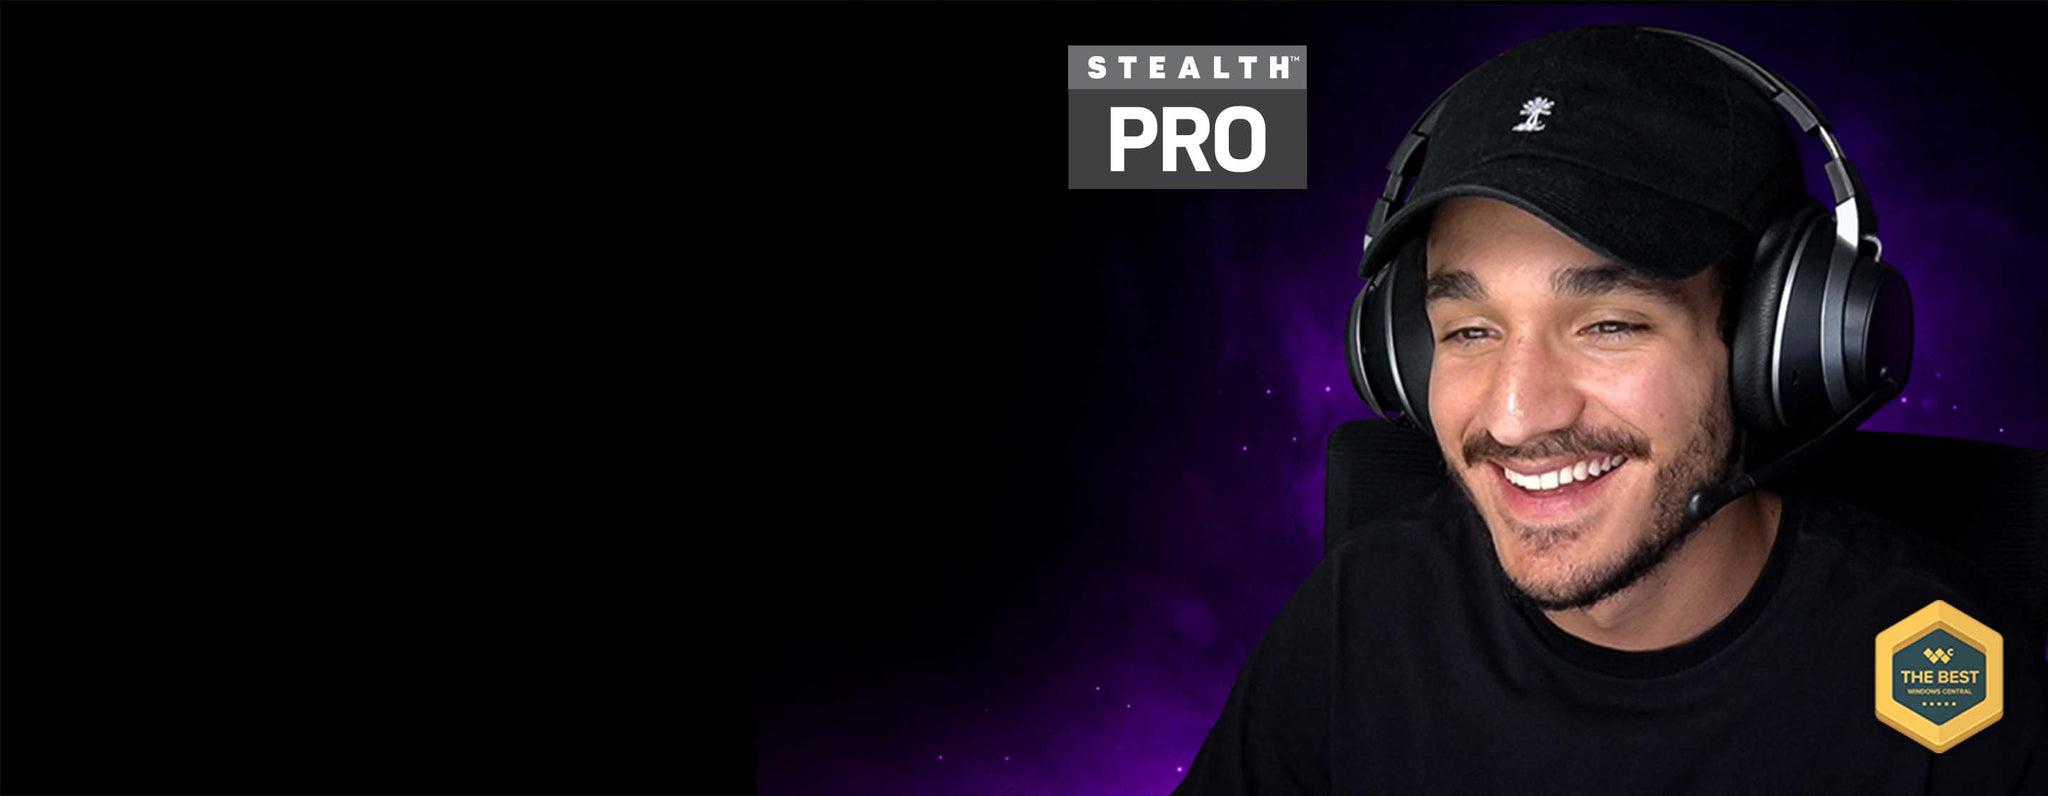 Todos alaben al nuevo rey del mundo inalámbrico: Stealth Pro